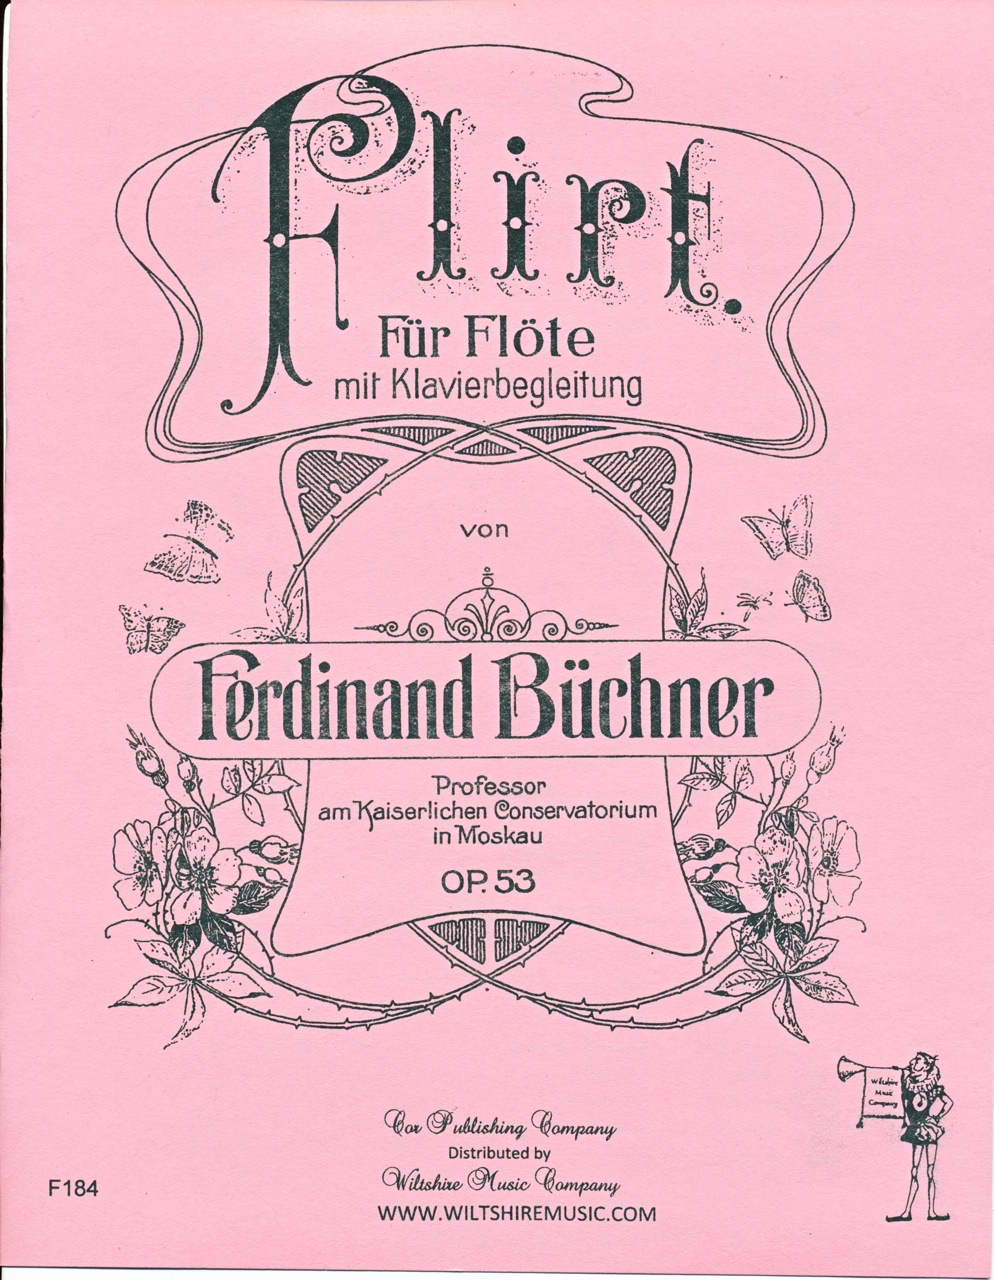 Flirt, Ferdinand Buchner